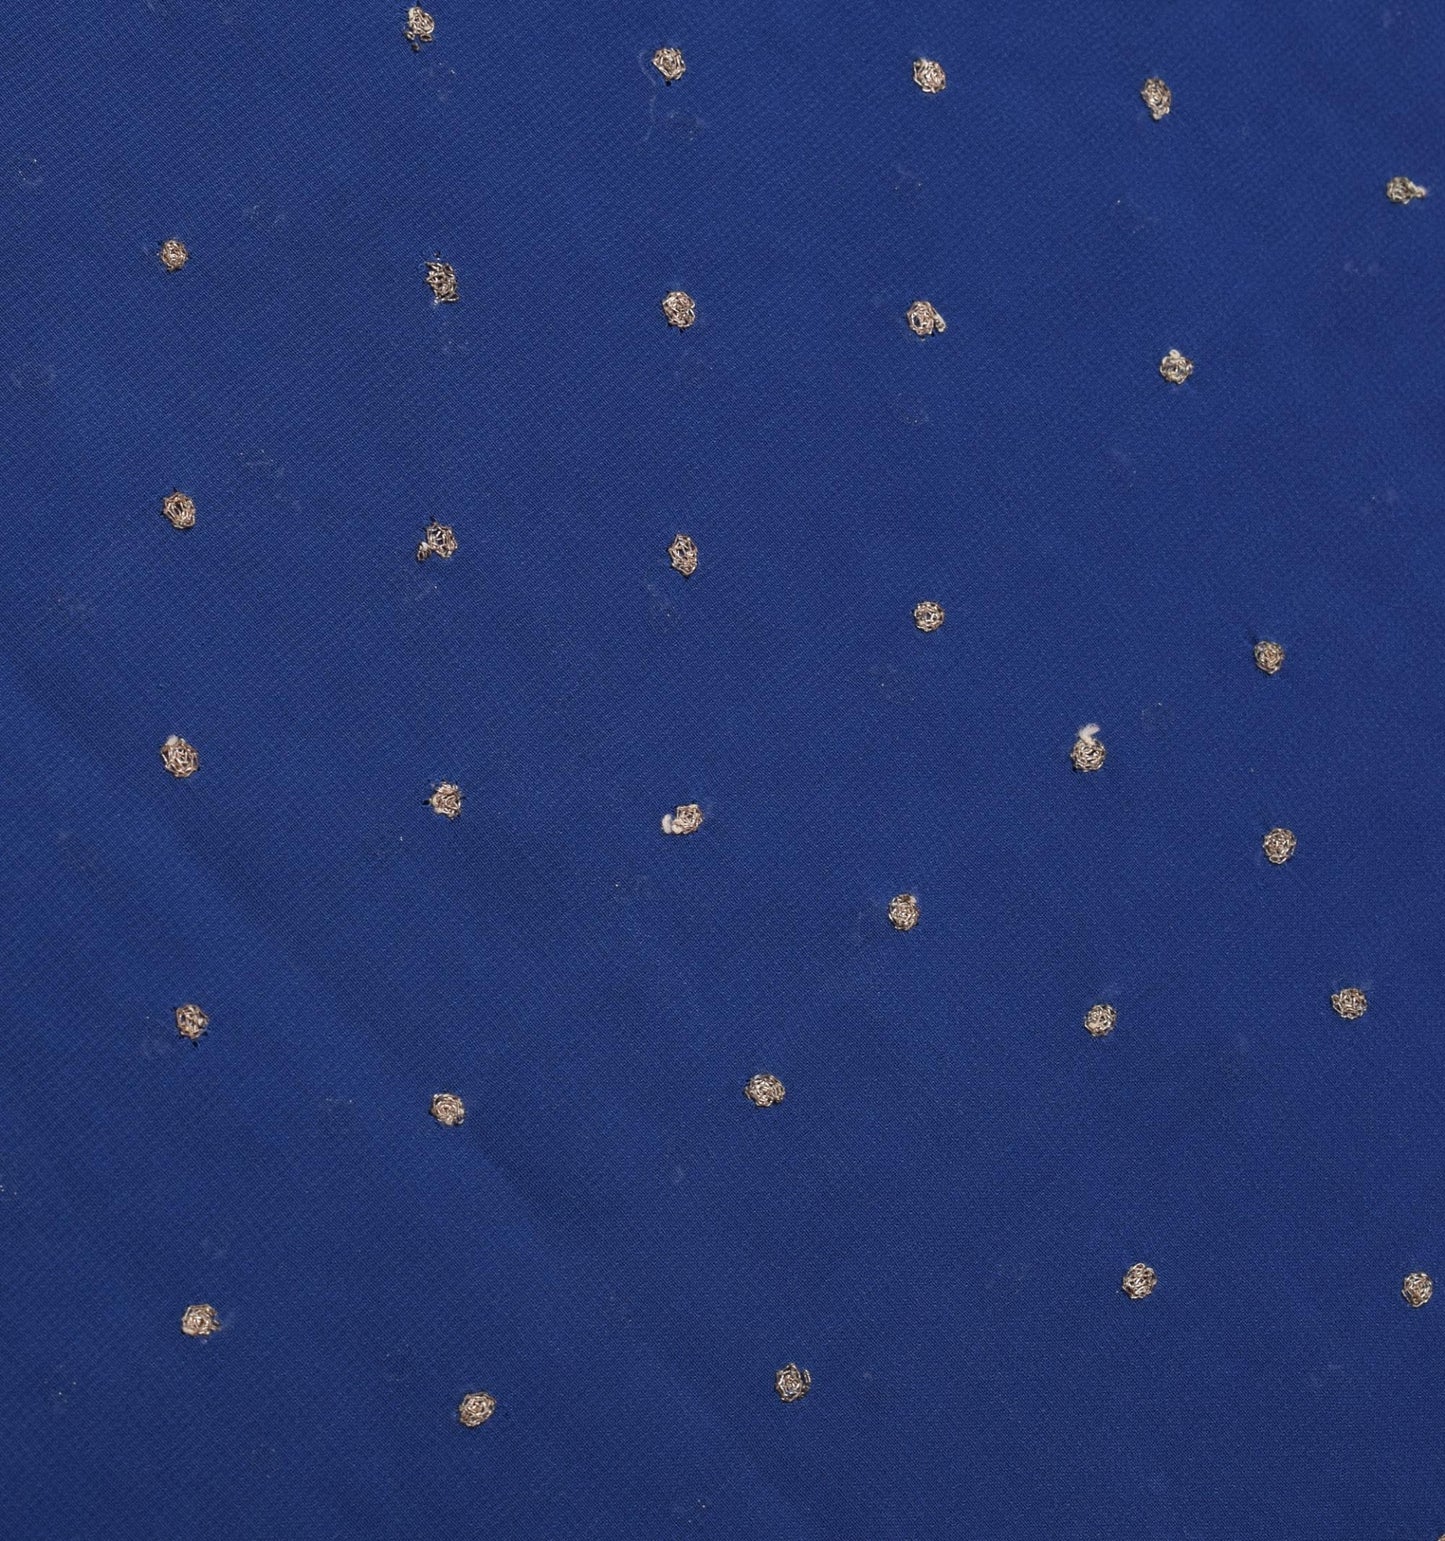 Sushila Vintage Blue Sari Remnant Scrap Multi Purpose Georgette Craft Fabric